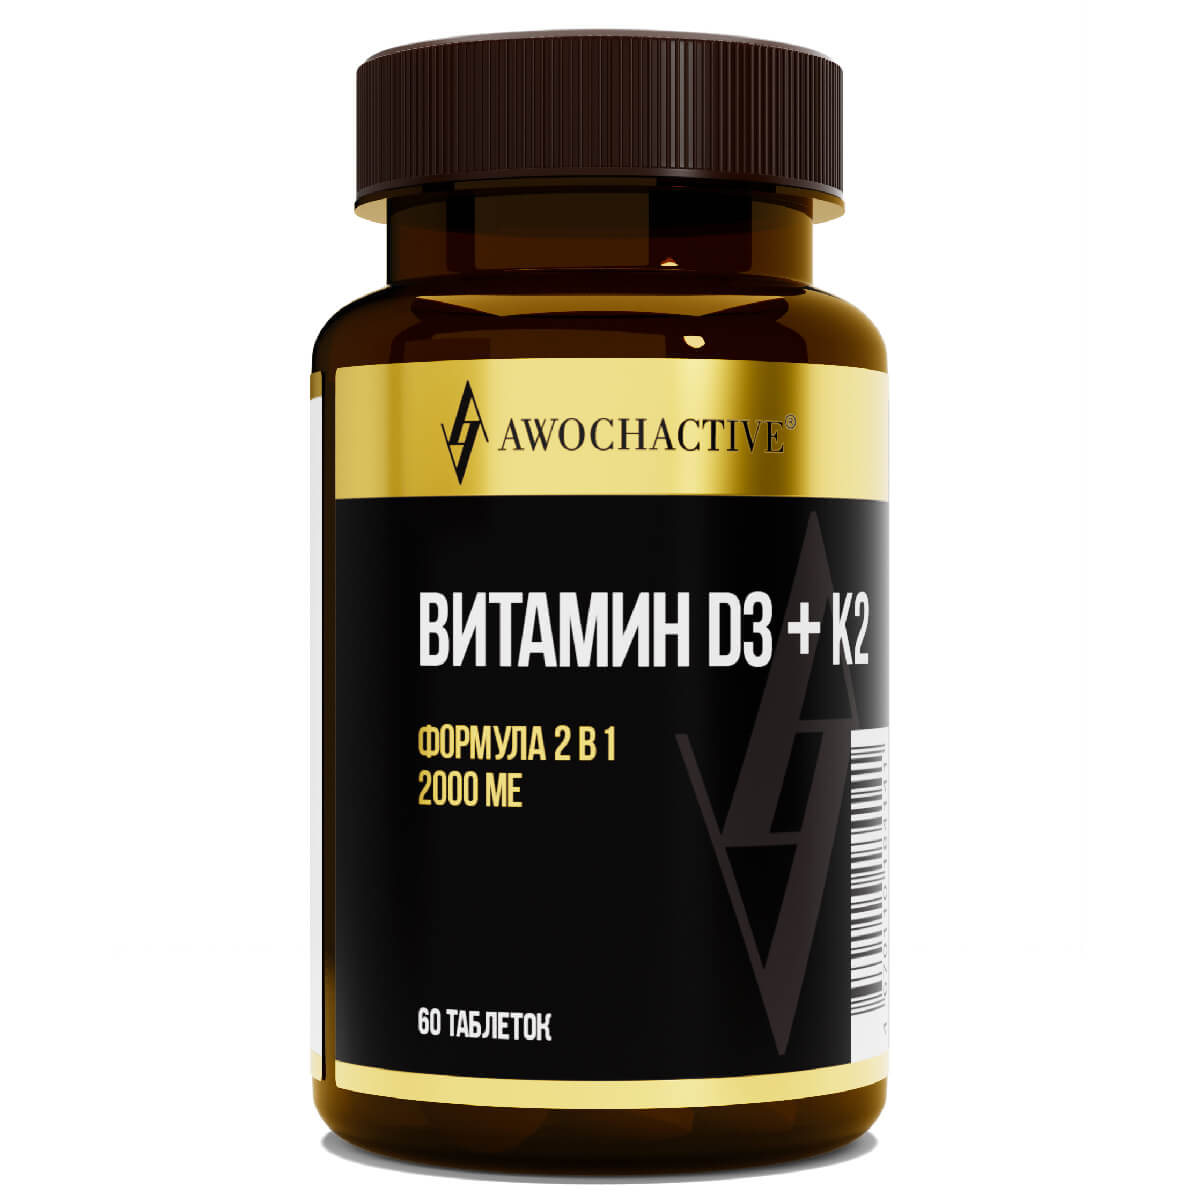 Витамин Д3 2000МЕ + К2, 60 таблеток, AWOCHACTIVE Витамин Д3 2000МЕ + К2, 60 таблеток, AWOCHACTIVE - фото 1